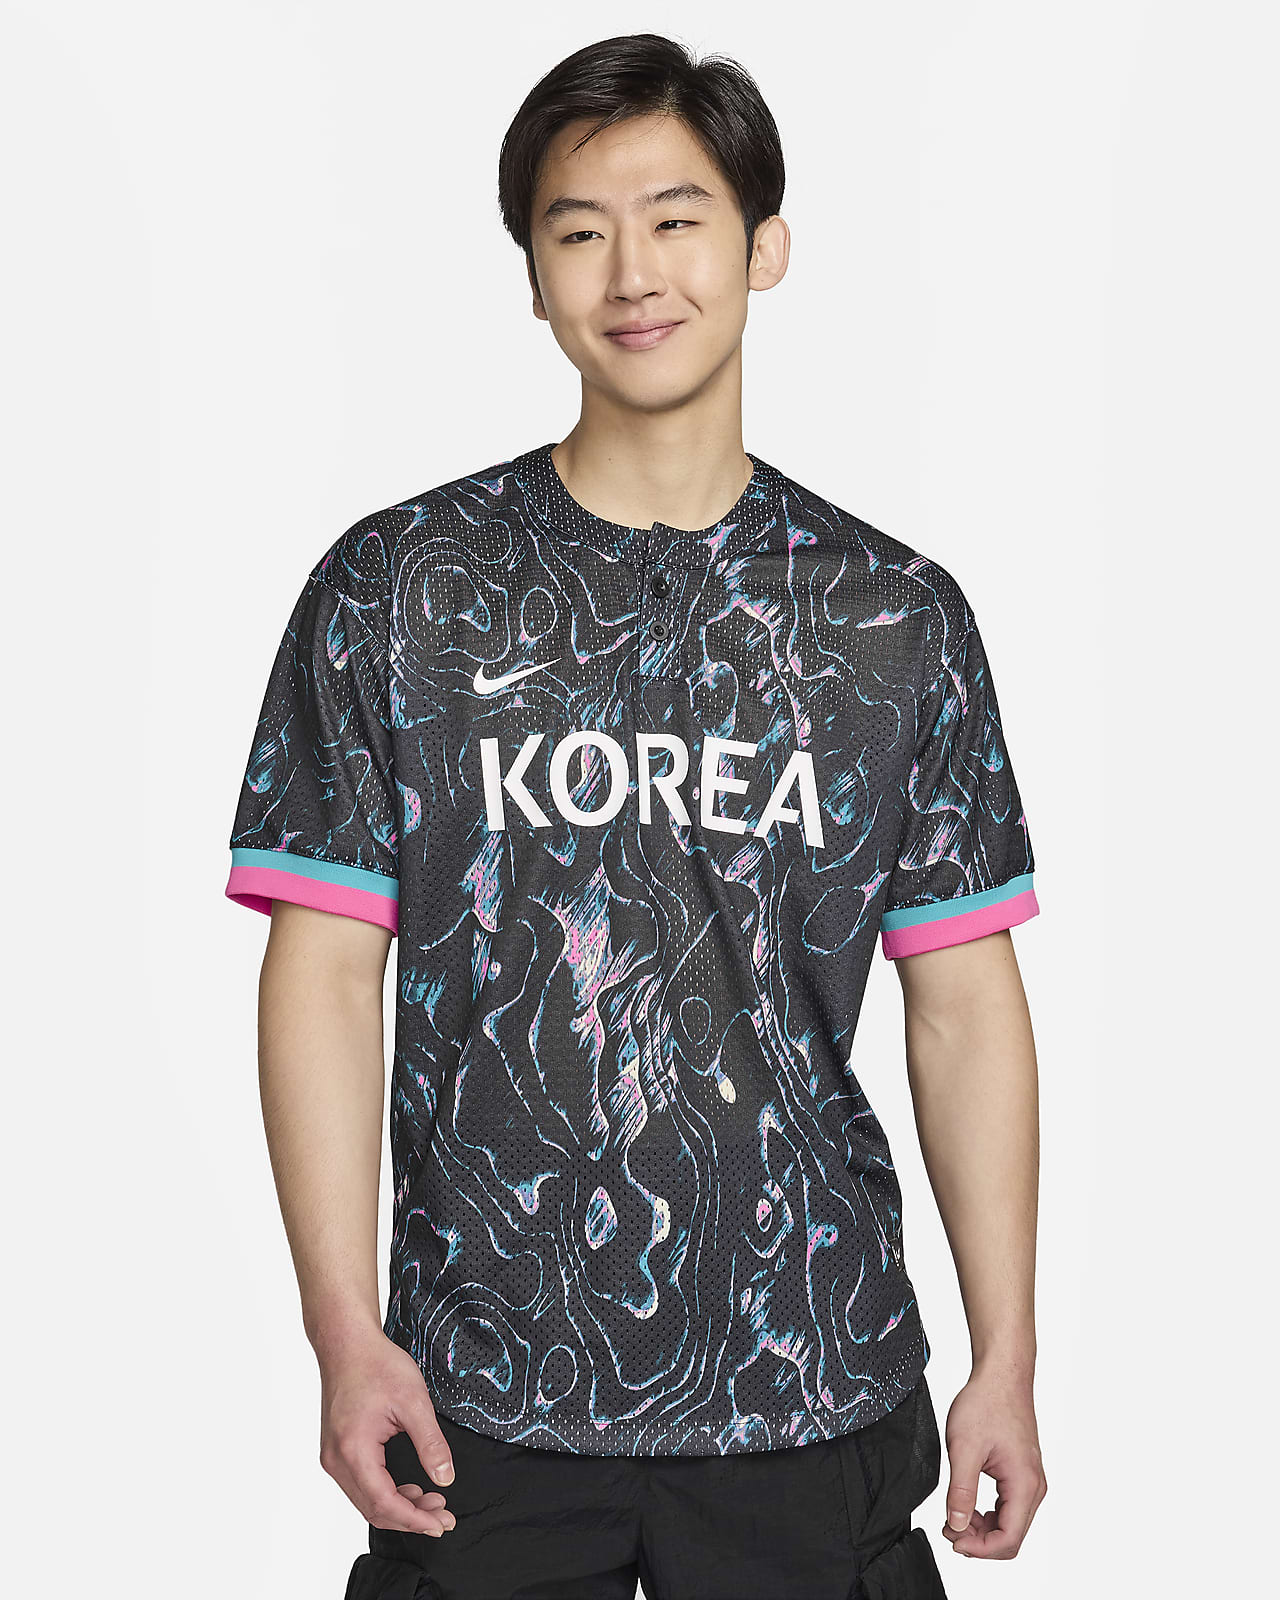 เสื้อแข่งเบสบอลผู้ชาย Nike Korea